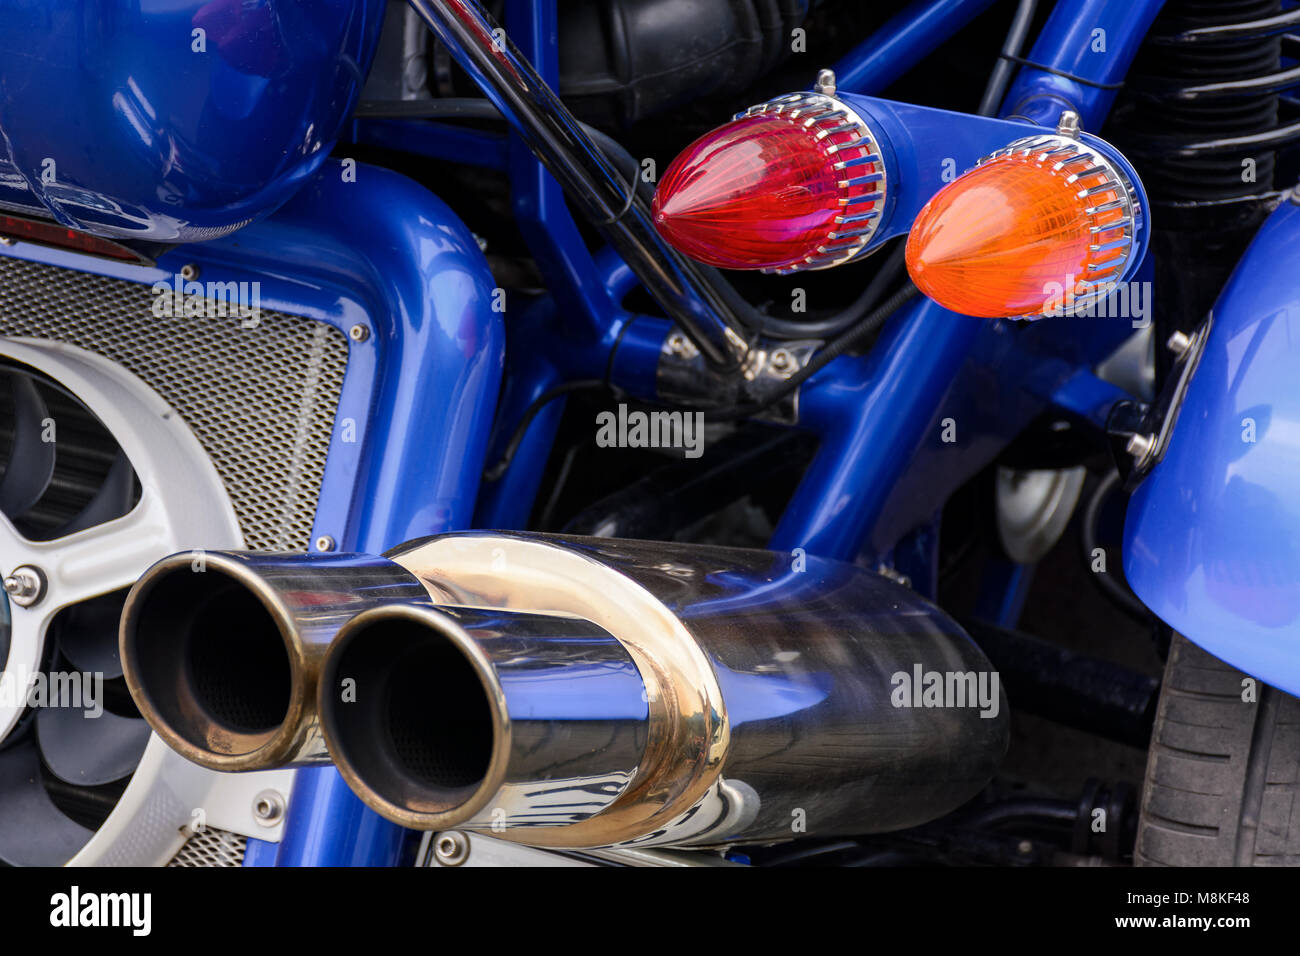 L'arrière d'une moto bleue. Joli détail tiré de lumières et les tuyaux d'échappement brillants Banque D'Images